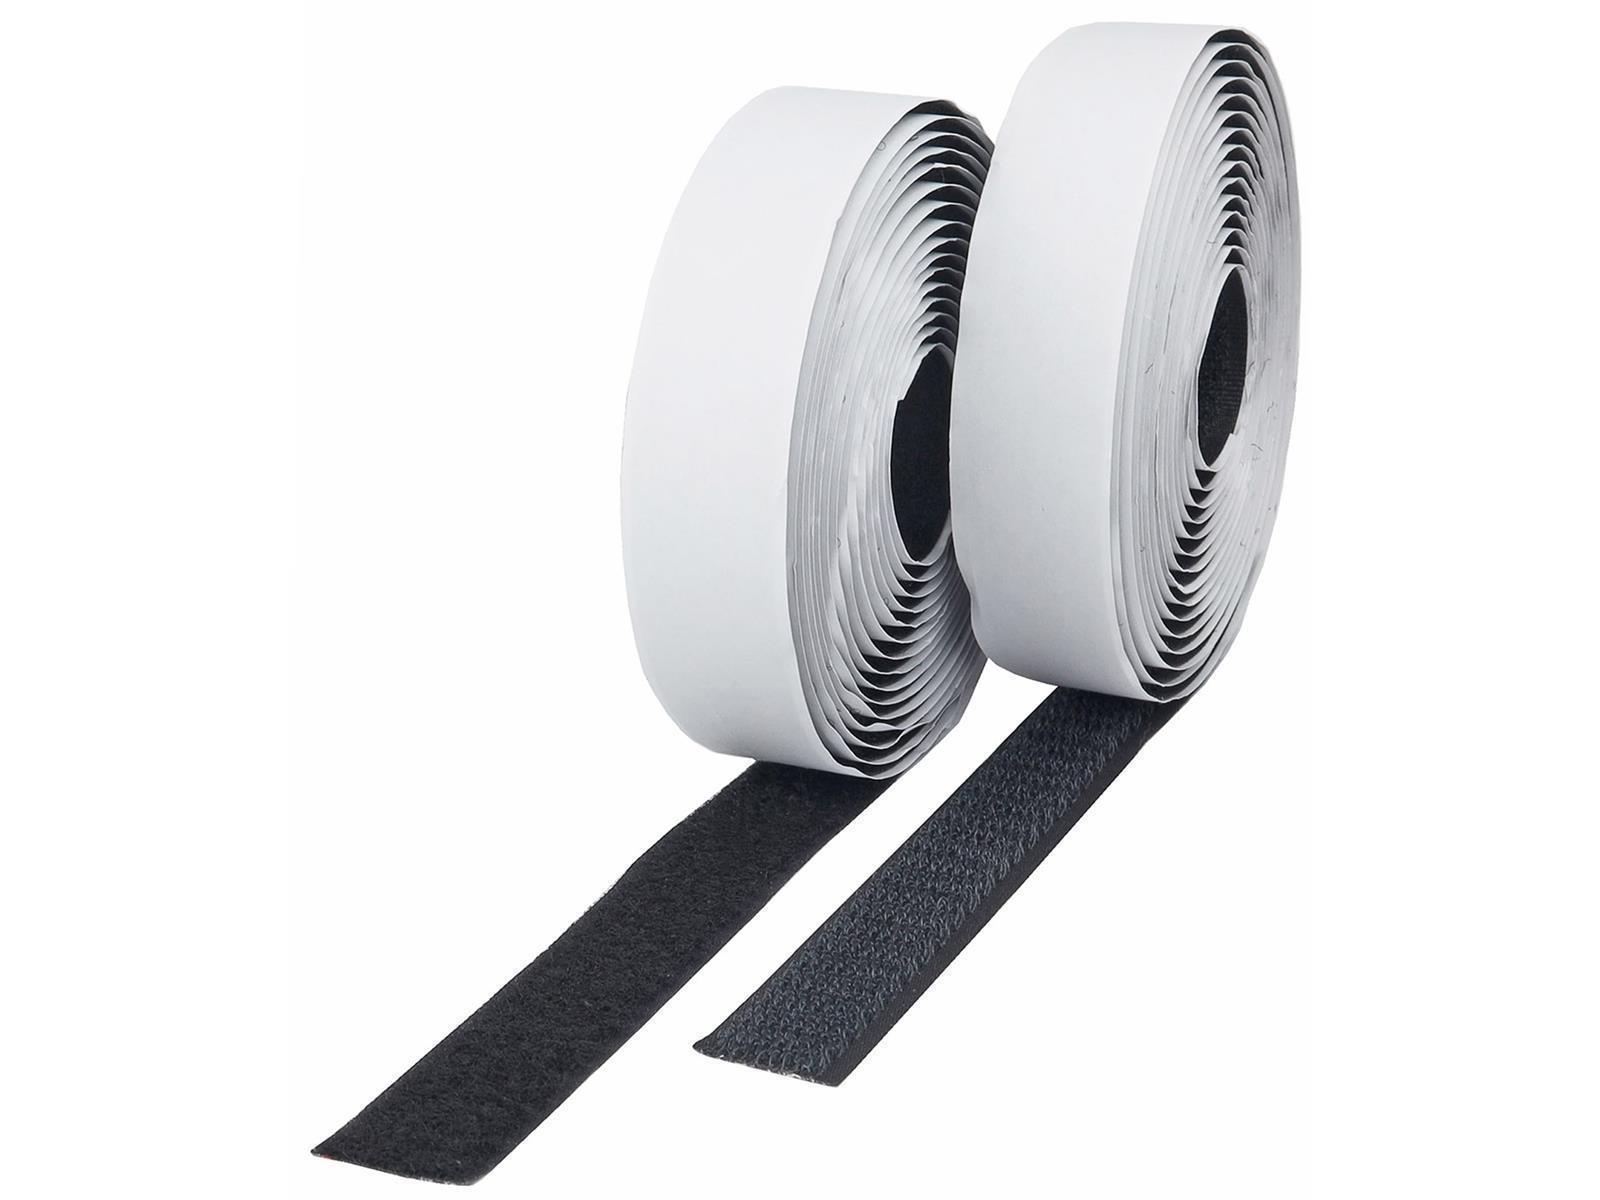 Klettband 10m auf Rolle, selbstklebend2-lagig, 1000x2cm, schwarz